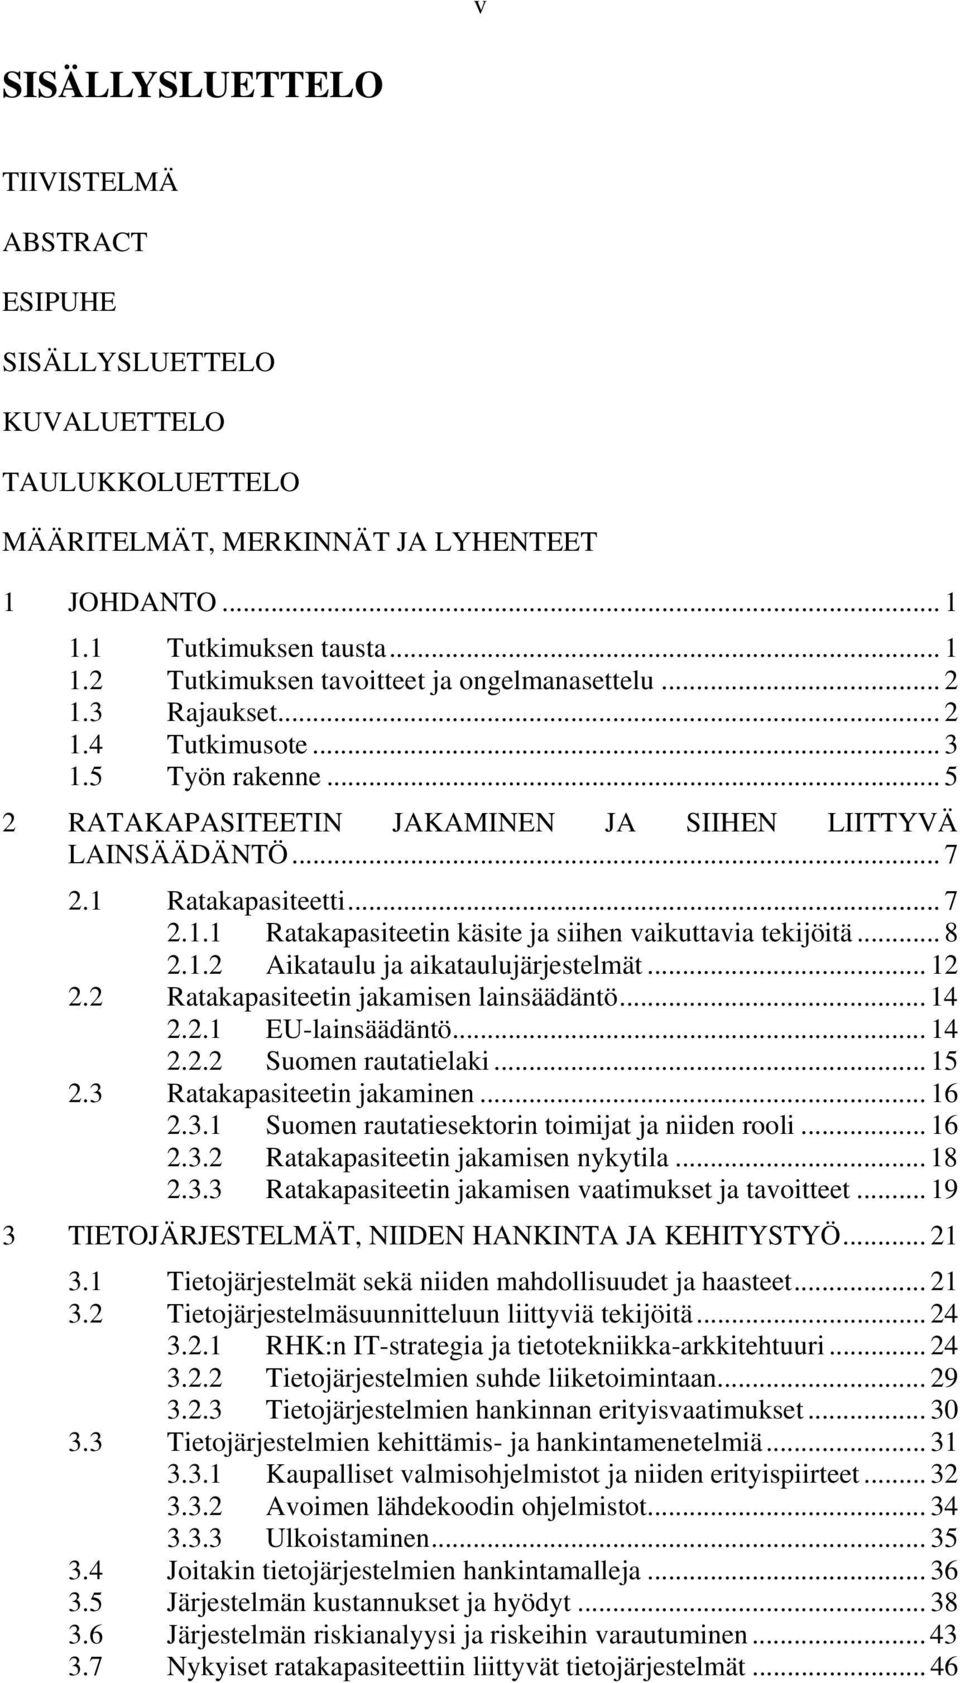 .. 8 2.1.2 Aikataulu ja aikataulujärjestelmät... 12 2.2 Ratakapasiteetin jakamisen lainsäädäntö... 14 2.2.1 EU-lainsäädäntö... 14 2.2.2 Suomen rautatielaki... 15 2.3 Ratakapasiteetin jakaminen... 16 2.